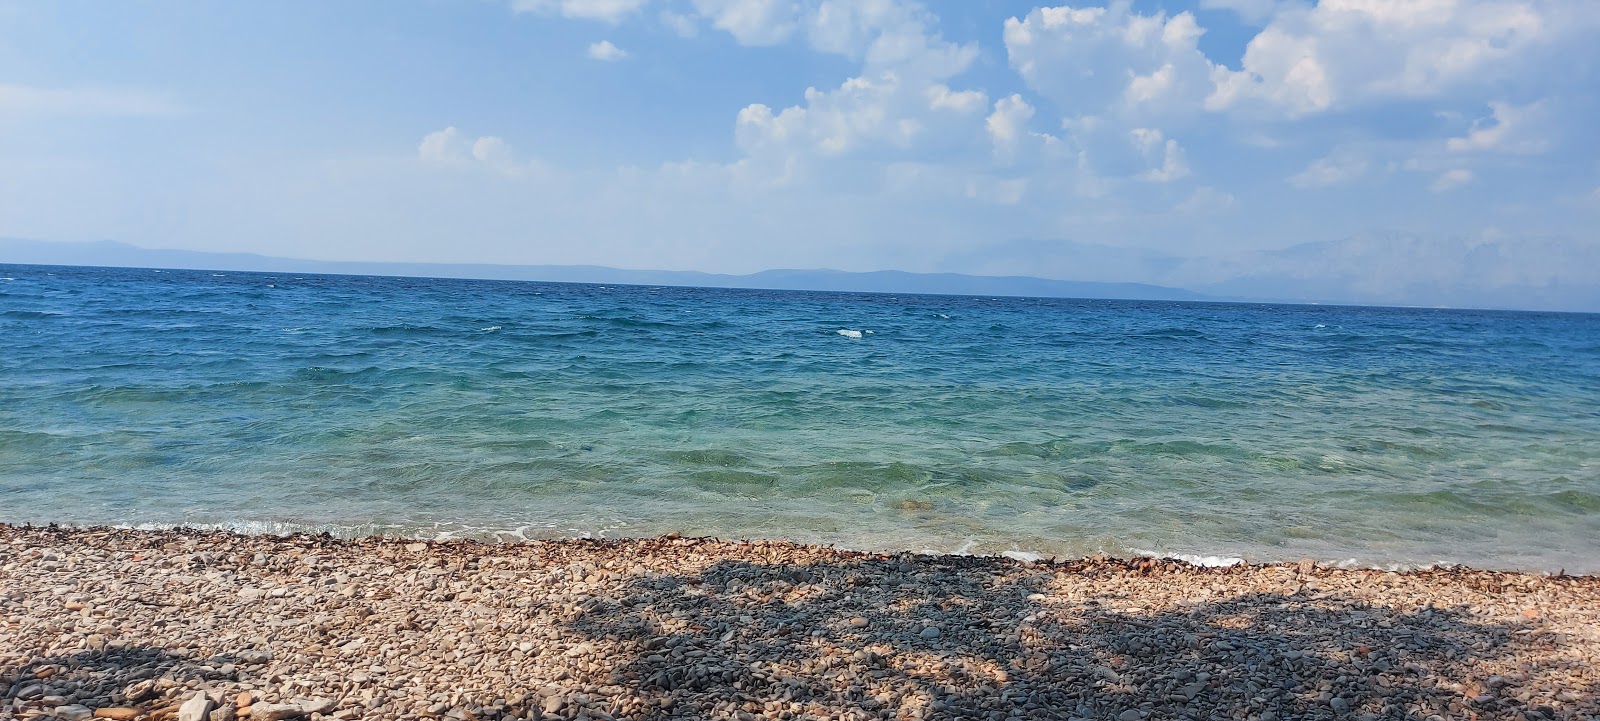 Photo de Salpa beach avec plage sans baie